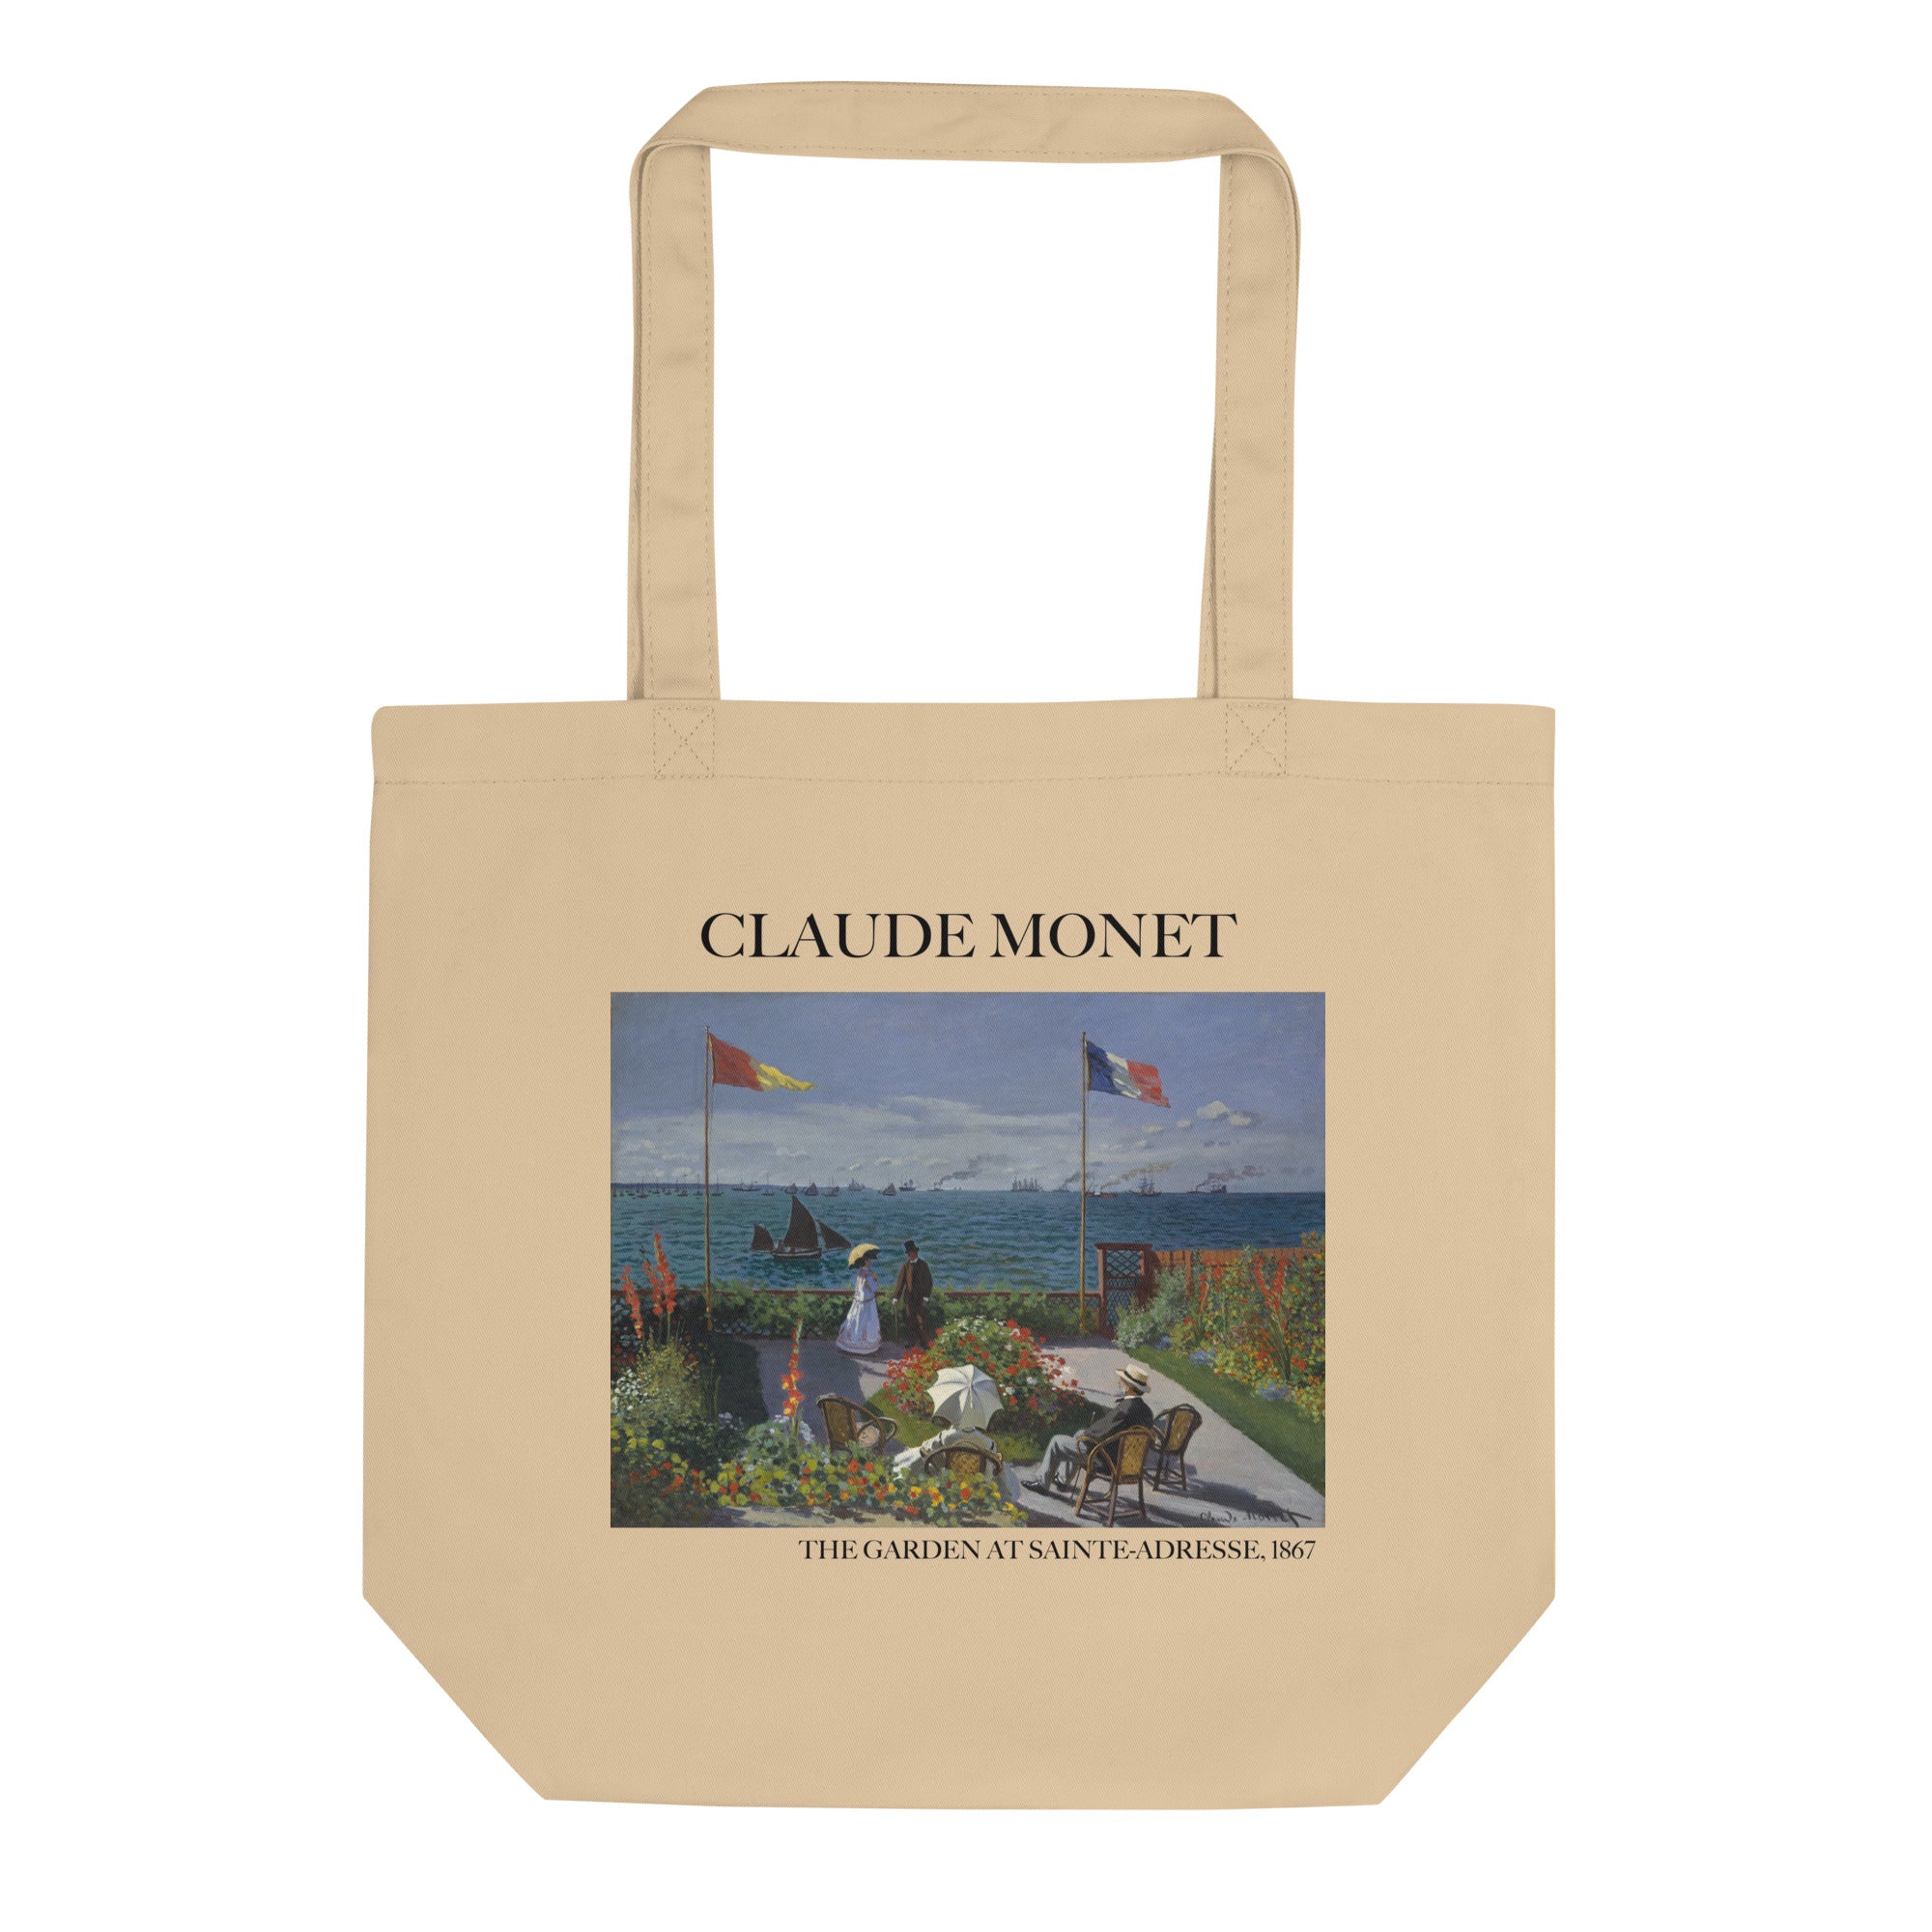 Claude Monet 'Der Garten in Sainte-Adresse' berühmtes Gemälde Tragetasche | Umweltfreundliche Kunst Tragetasche